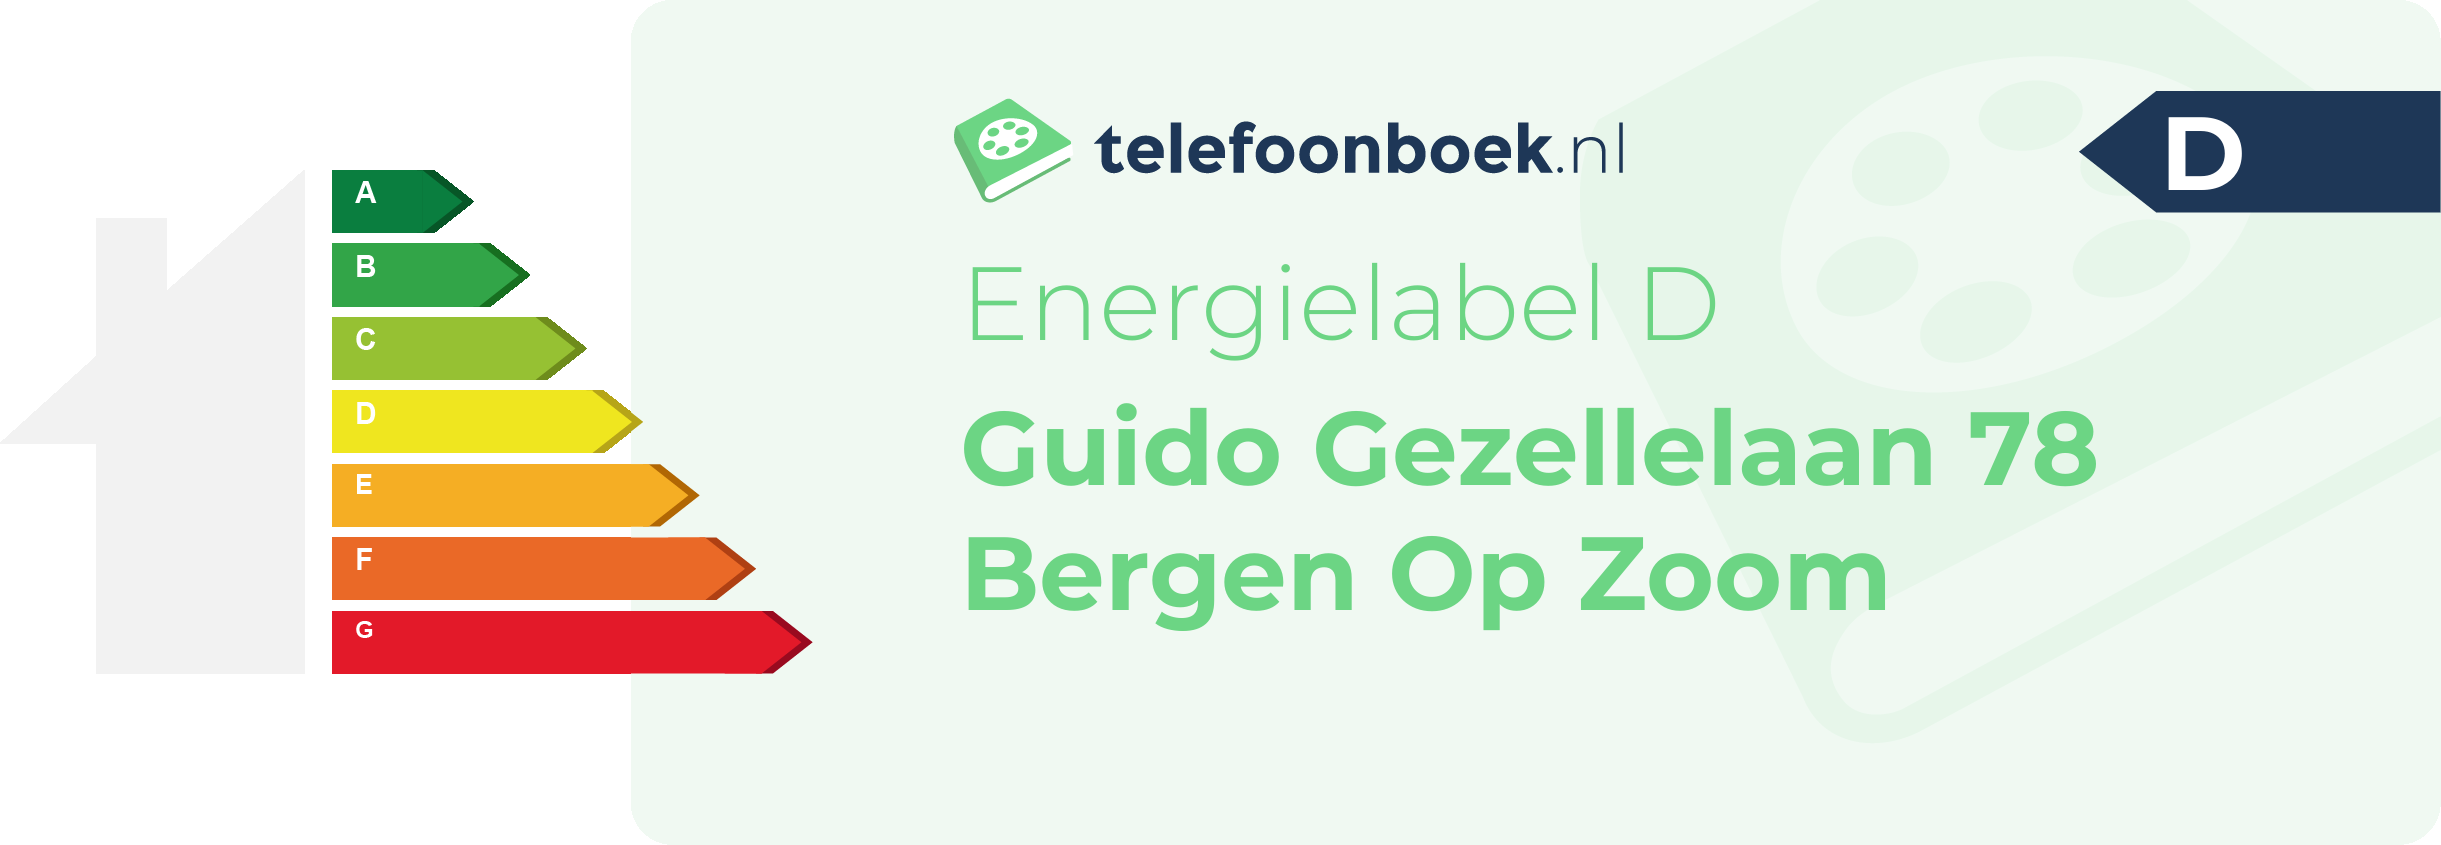 Energielabel Guido Gezellelaan 78 Bergen Op Zoom